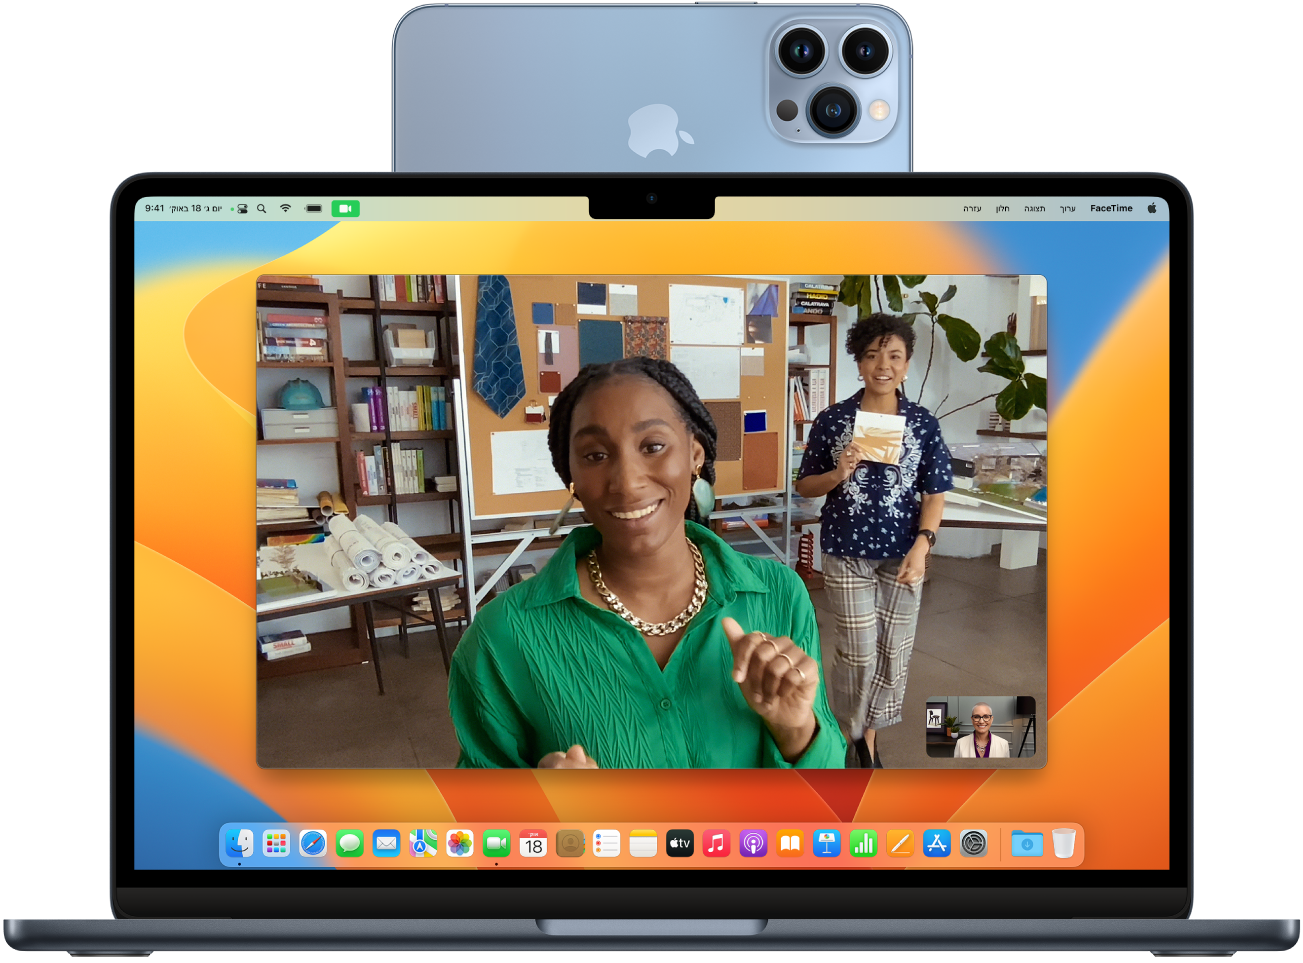 מחשב Mac עם iPhone שמשמש כמצלמת רשת שמורכב בחלק העליון של הצג. התמונה ממצלמת ה-iPhone מופיעה על הצג של ה-Mac.